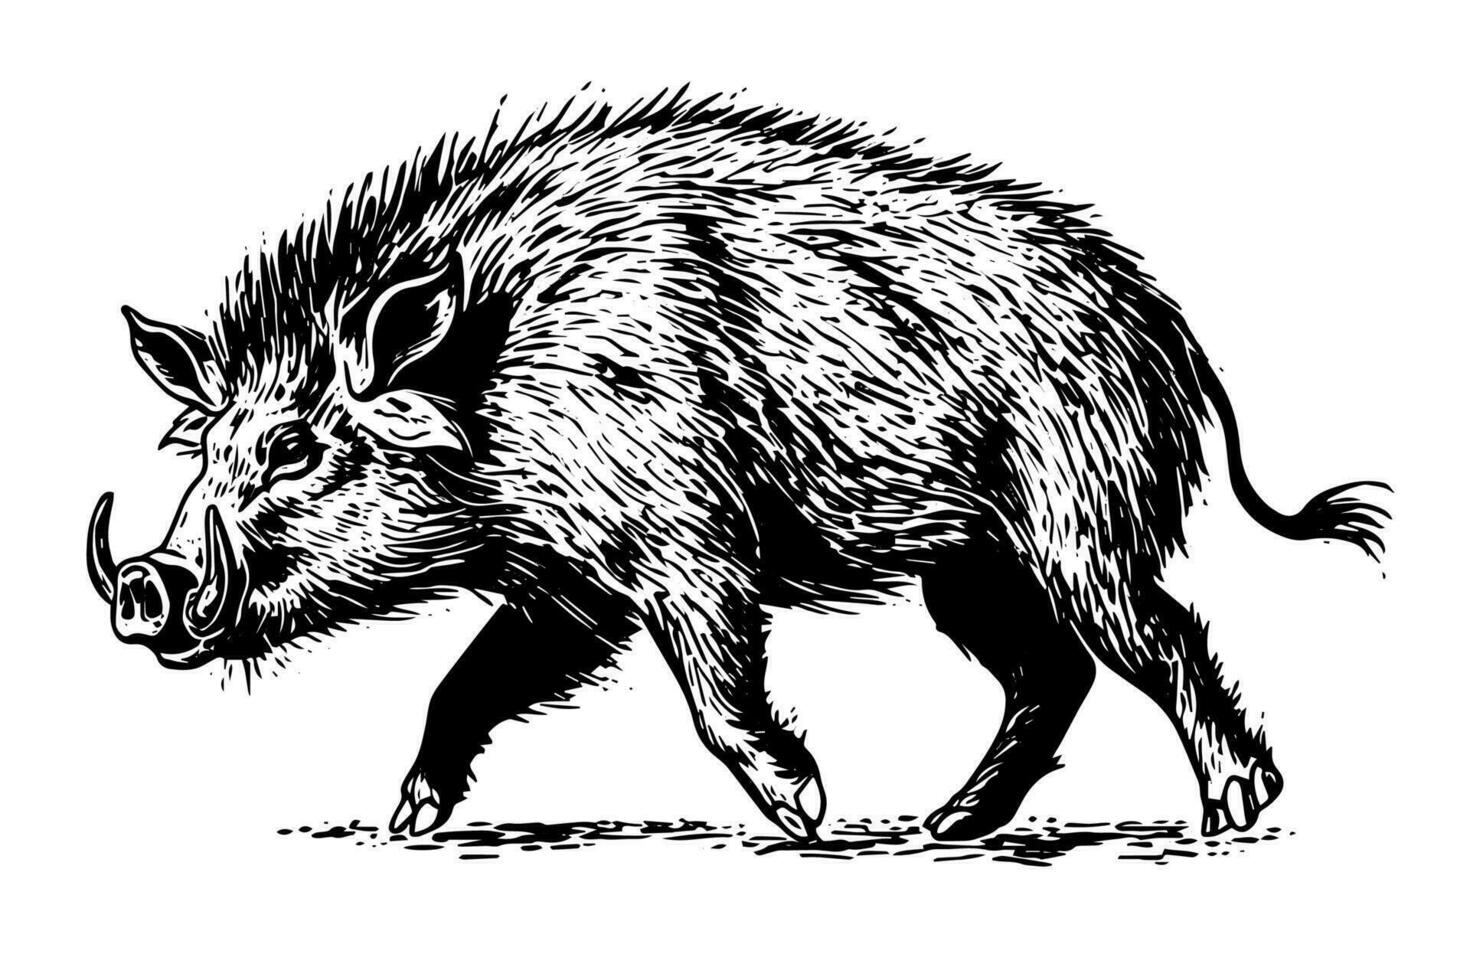 zwijn of wild varken tekening inkt schetsen, wijnoogst gegraveerde stijl vector illustratie.